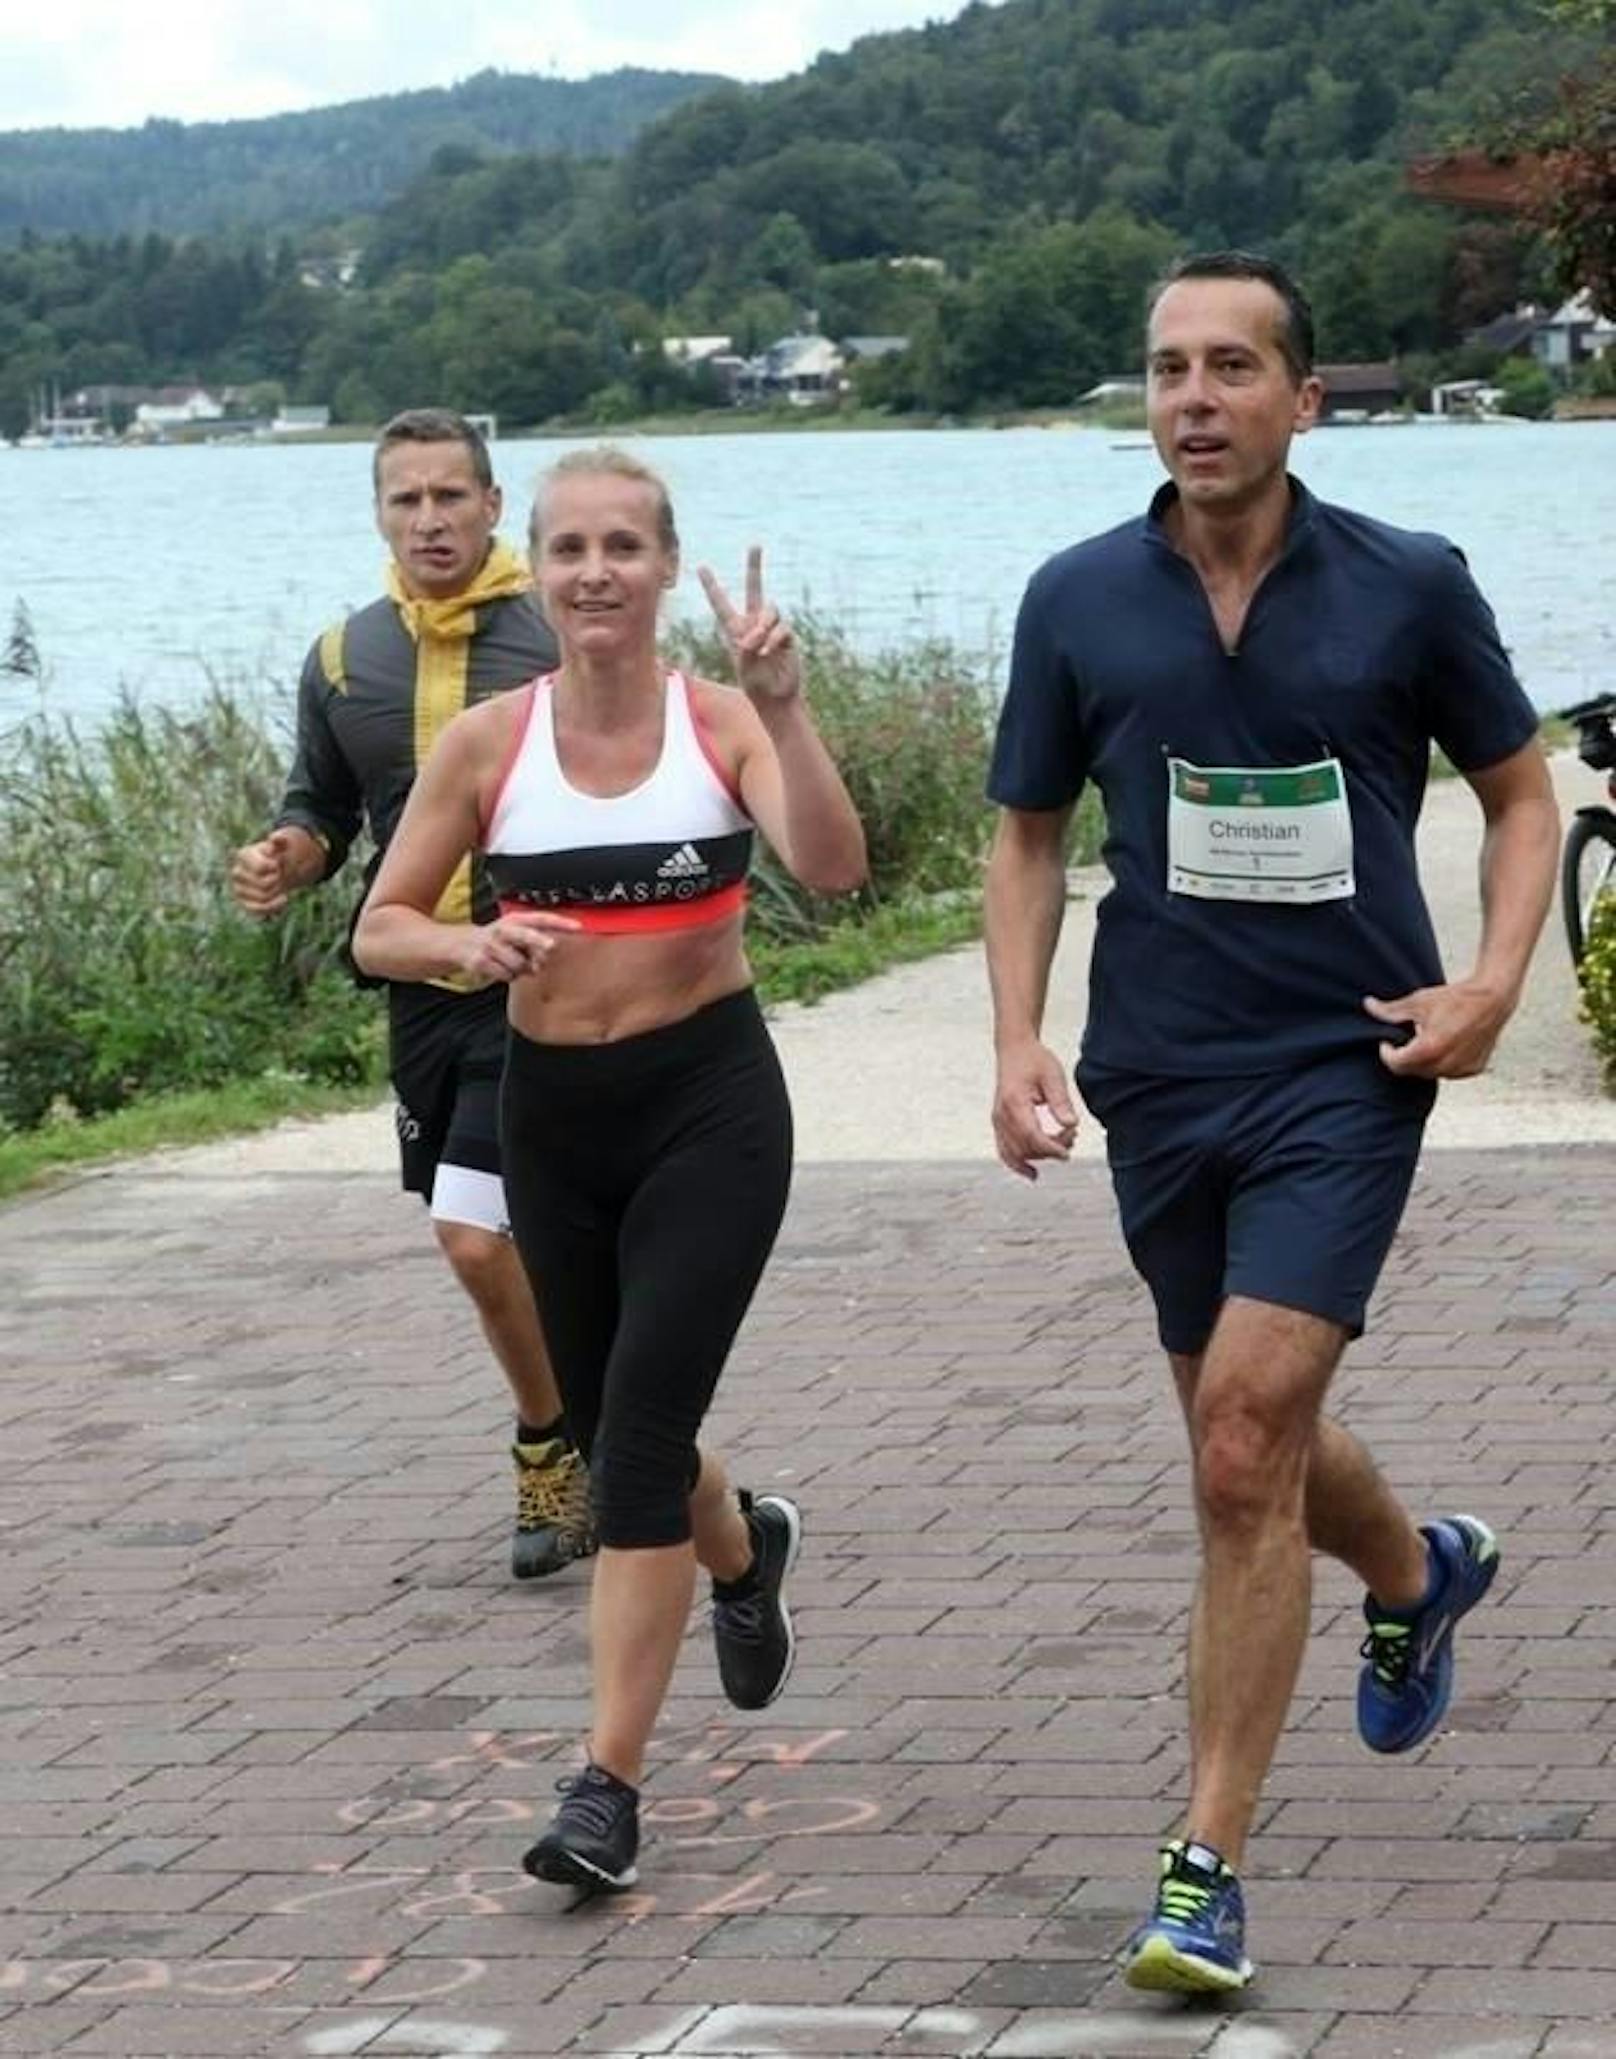 Die 10,55 Kilometer lange Strecke bestritt er zusammen mit Ehefrau Eveline. Wie es sich für ein eingeschworenes Team gehört, passierten sie auch gemeinsam die Ziellinie.